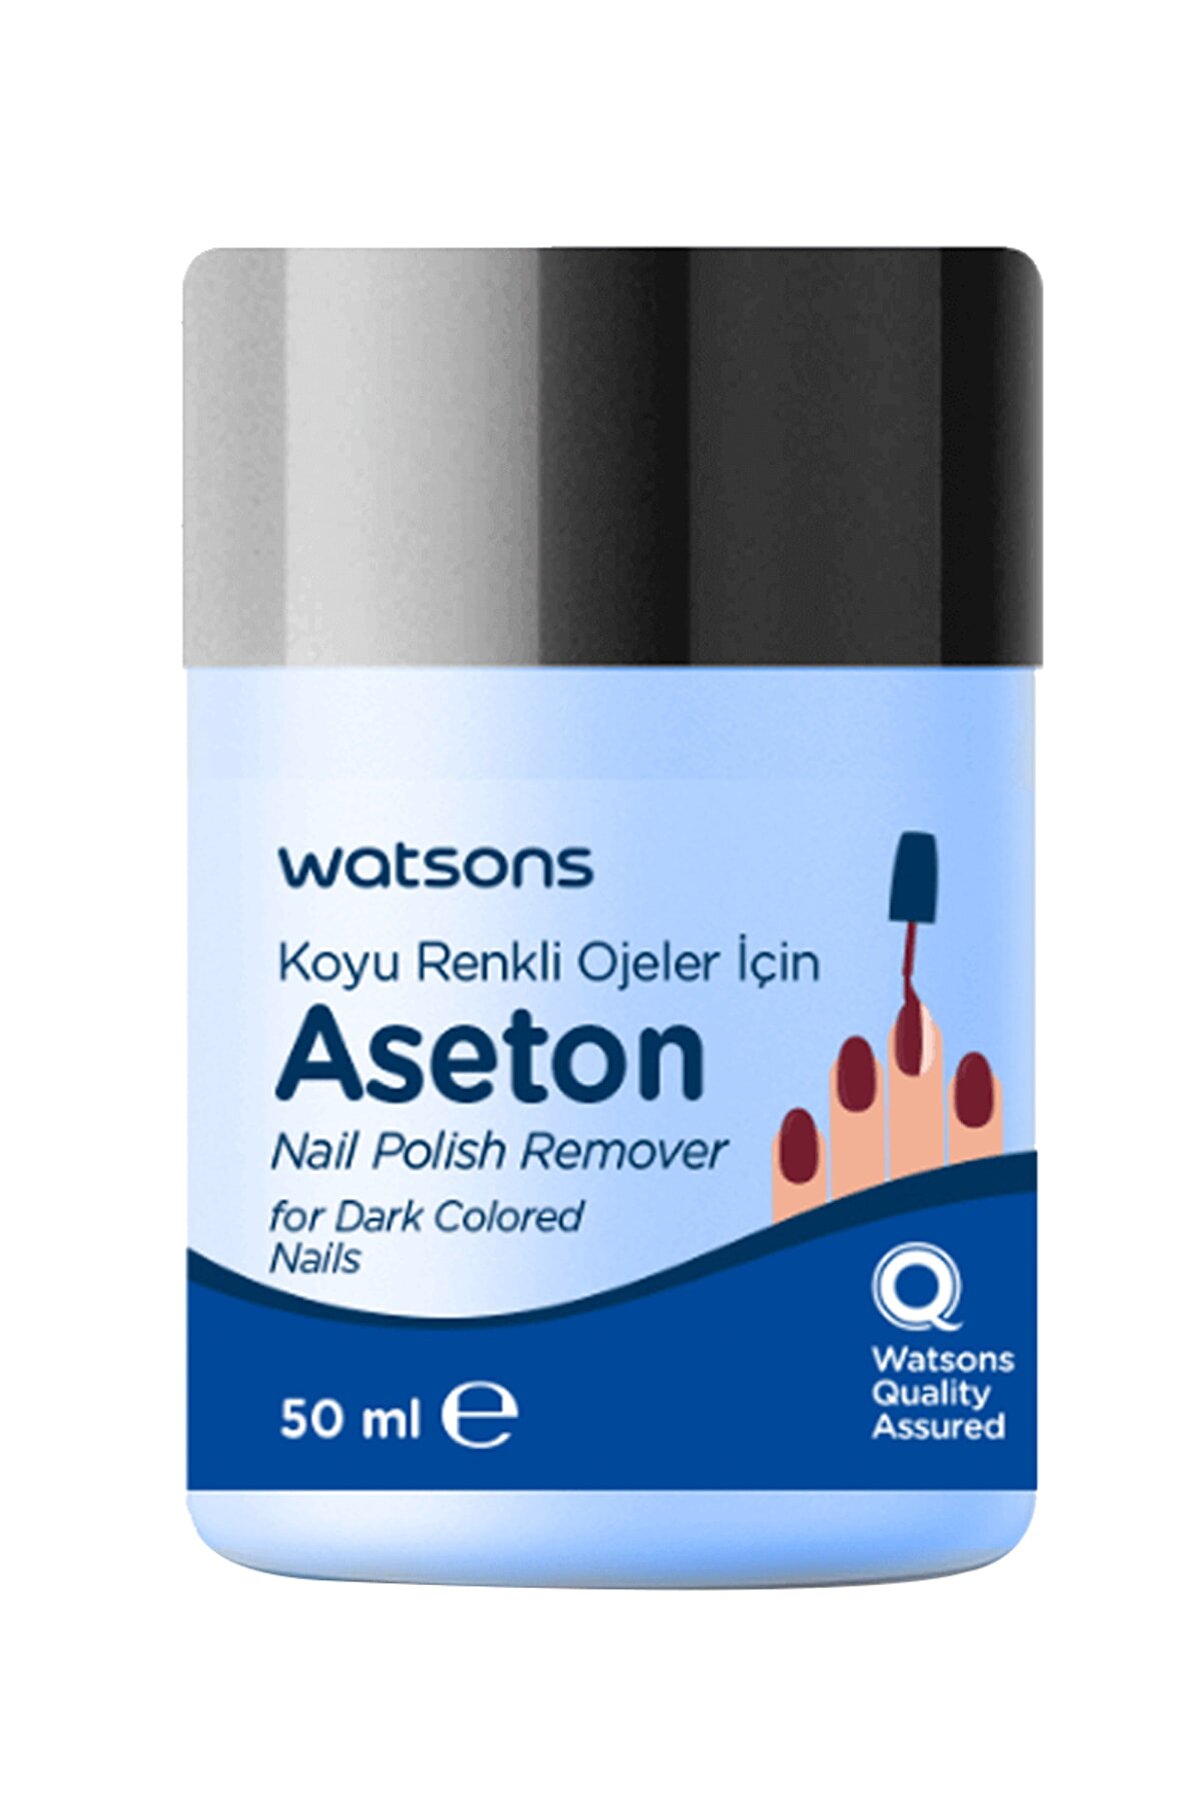 Watsons Koyu Renk Ojeler İçin Aseton 50 ml 2399900902117